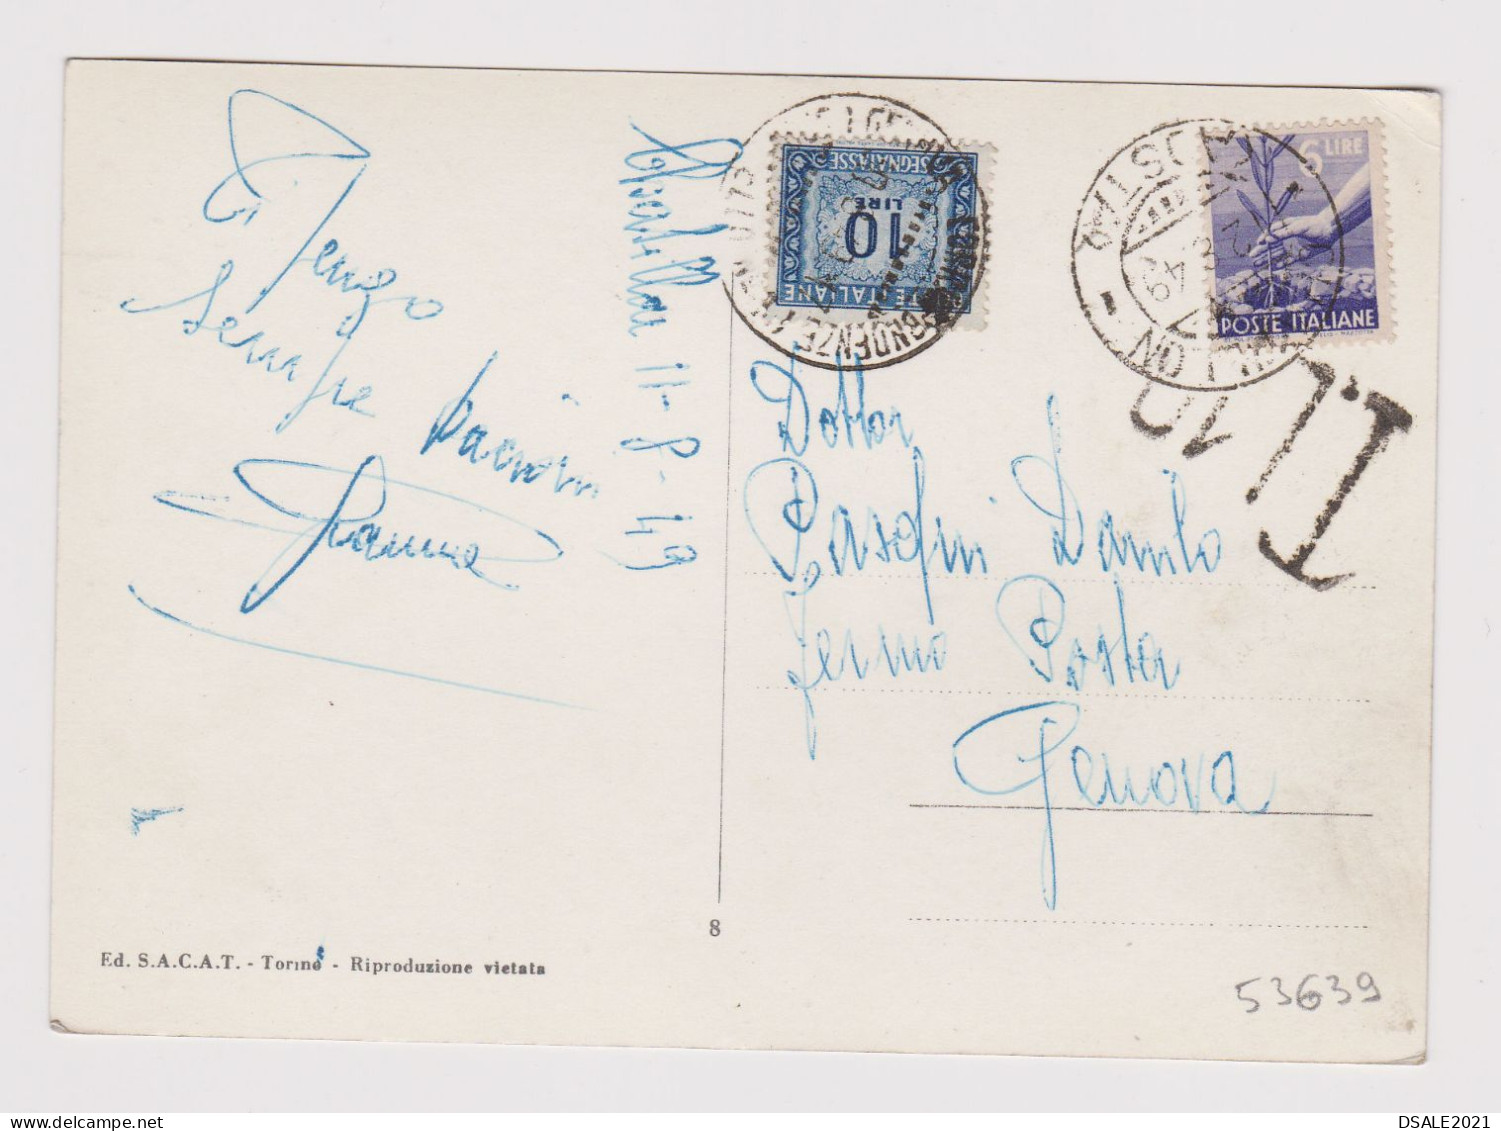 ITALY 1949 Pc W/6Lire Stamp AOSTA To GENOVA Postage Due 10Lire, Postcard St. VINCENT M.575 PIAZZALE DELLA FONTE /53639 - 1946-60: Storia Postale